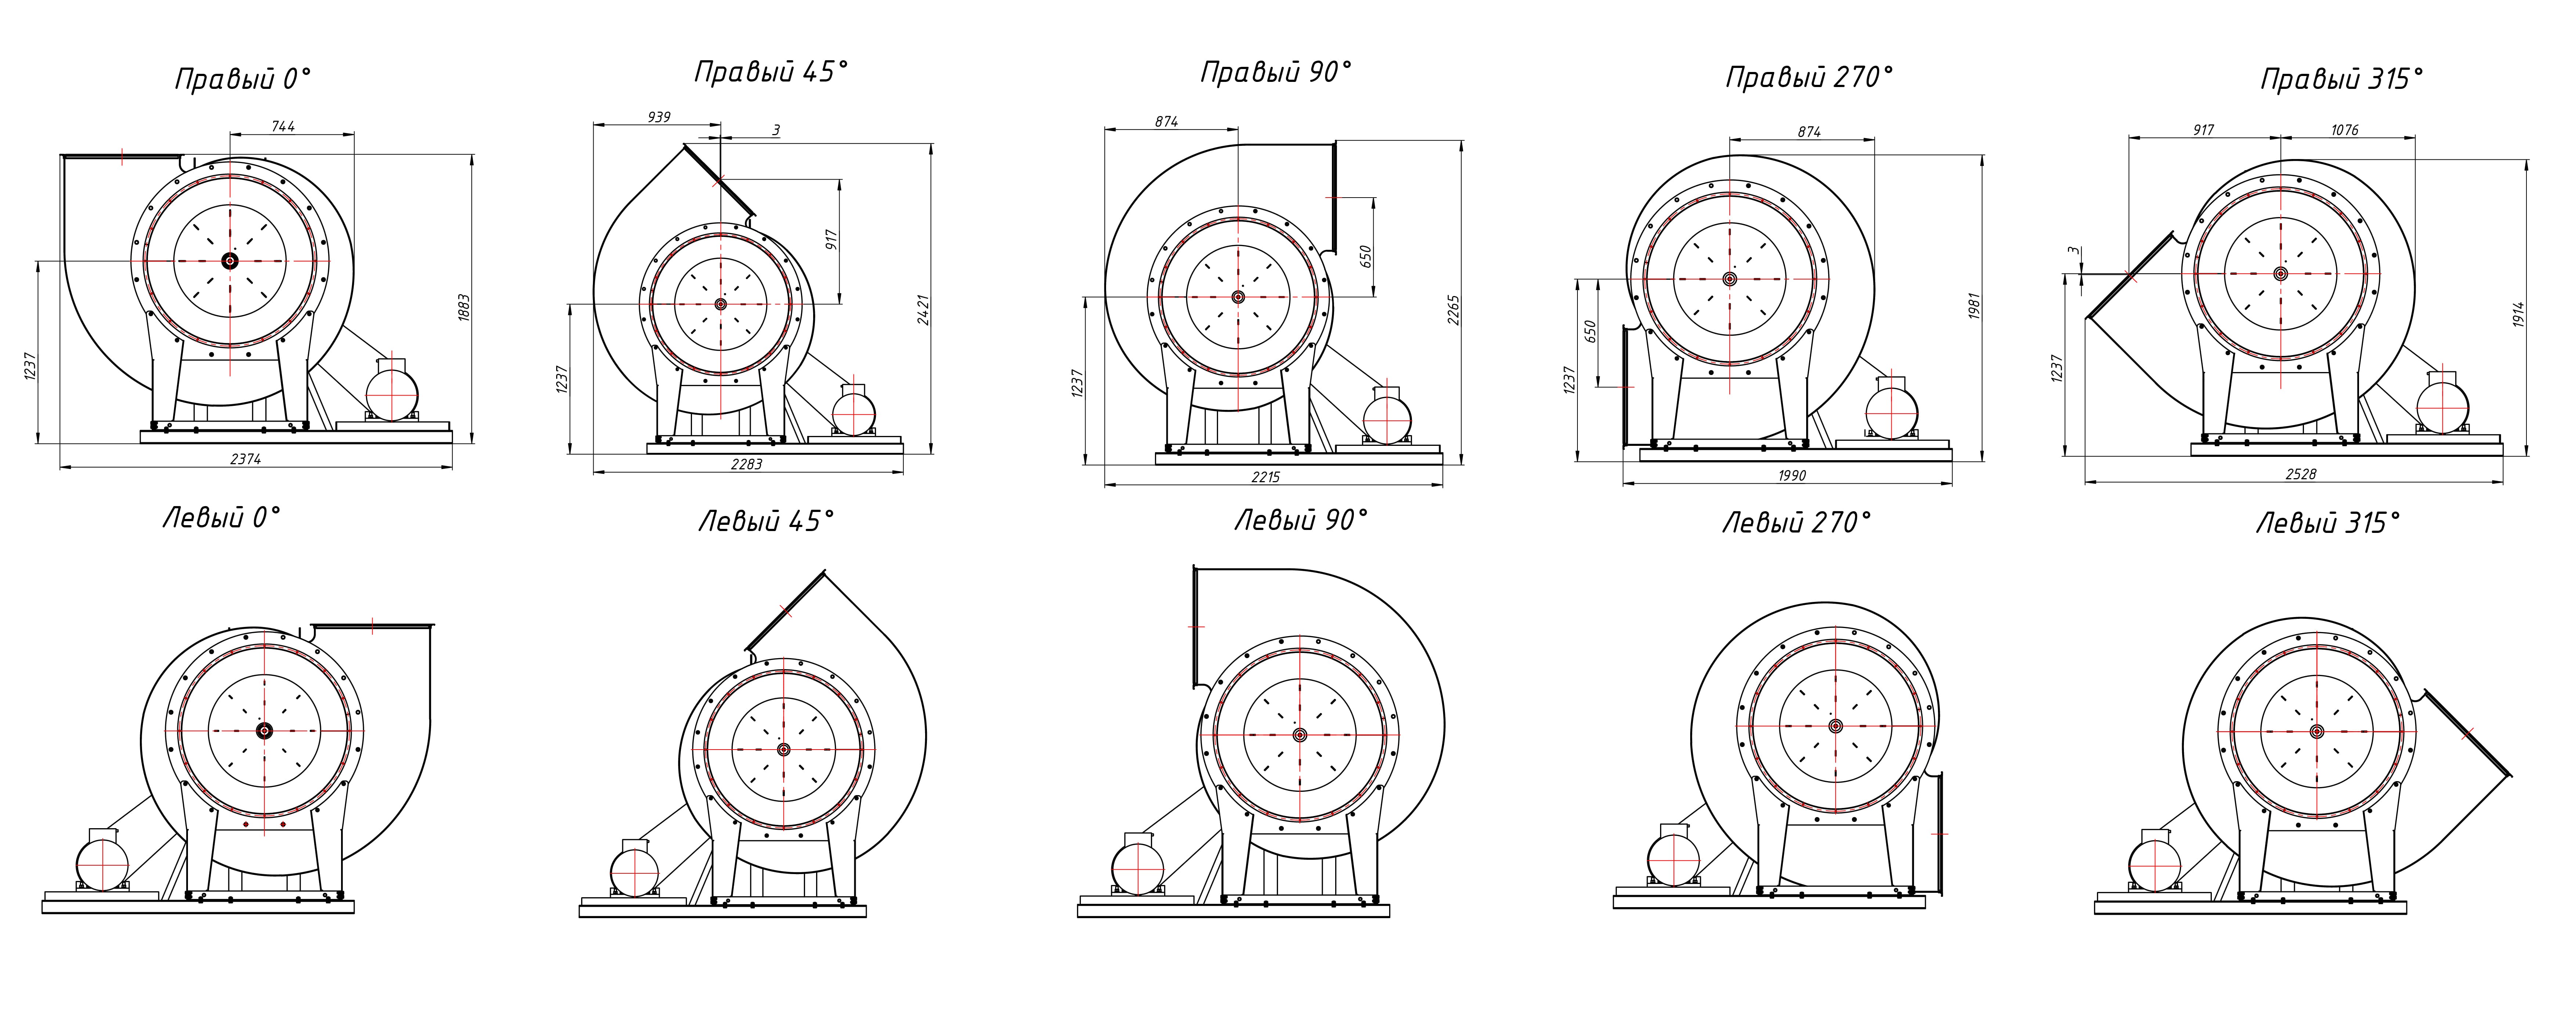 Габаритные и присоединительные размеры радиального вентилятора  ВЦ 4-70 №10 Исполнение 5, зависящие от положения корпуса